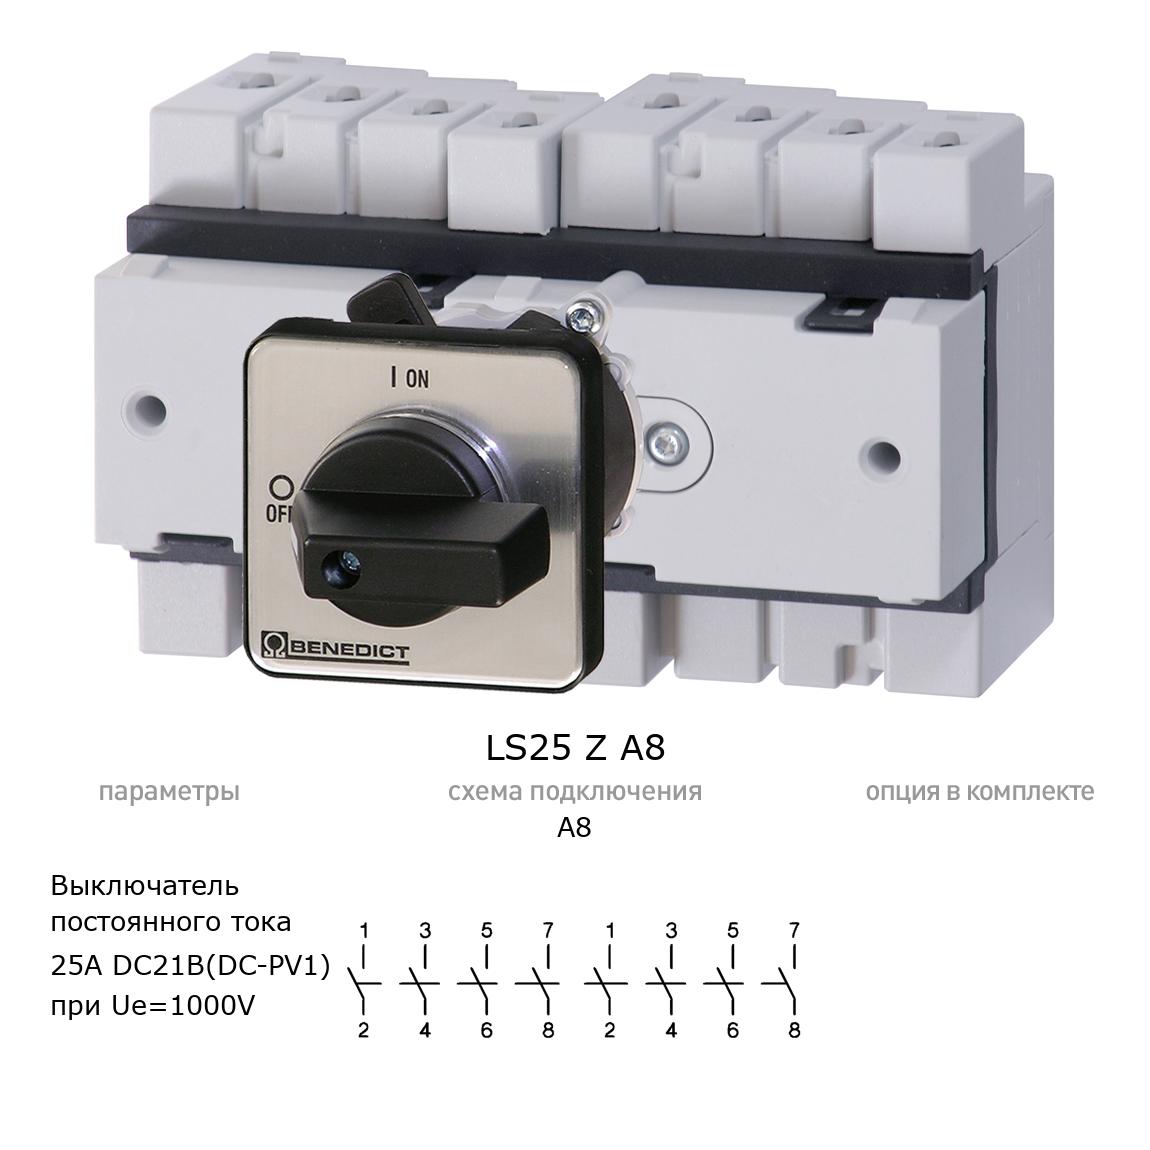 Кулачковый переключатель для постоянного тока (DC) LS25 Z A8 BENEDICT